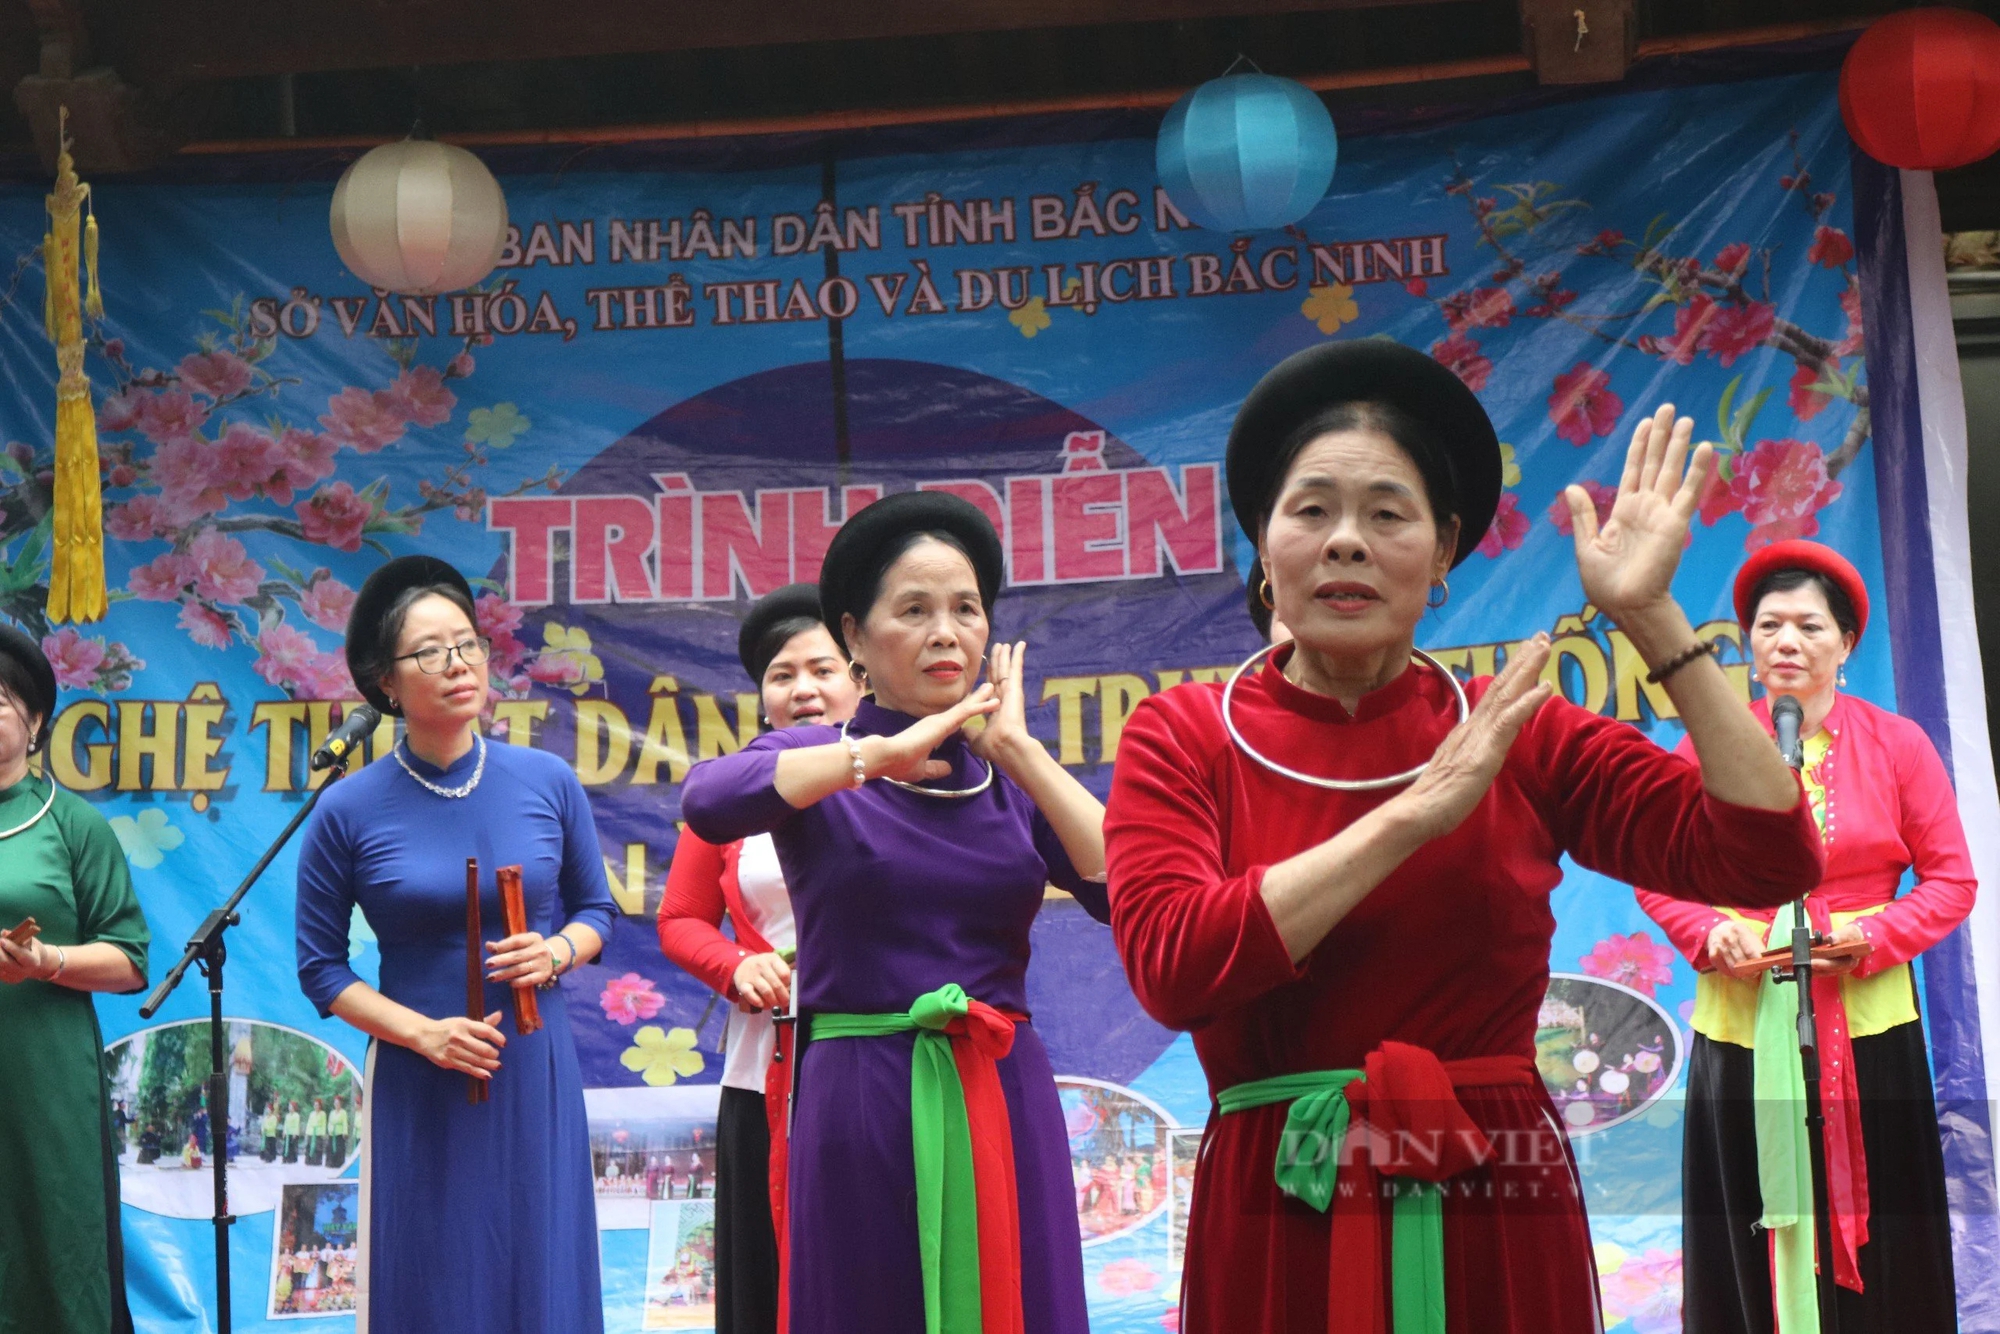 Bắc Ninh: Trình diễn nghệ thuật dân gian truyền thống tại di tích quốc gia đặc biệt- Ảnh 3.